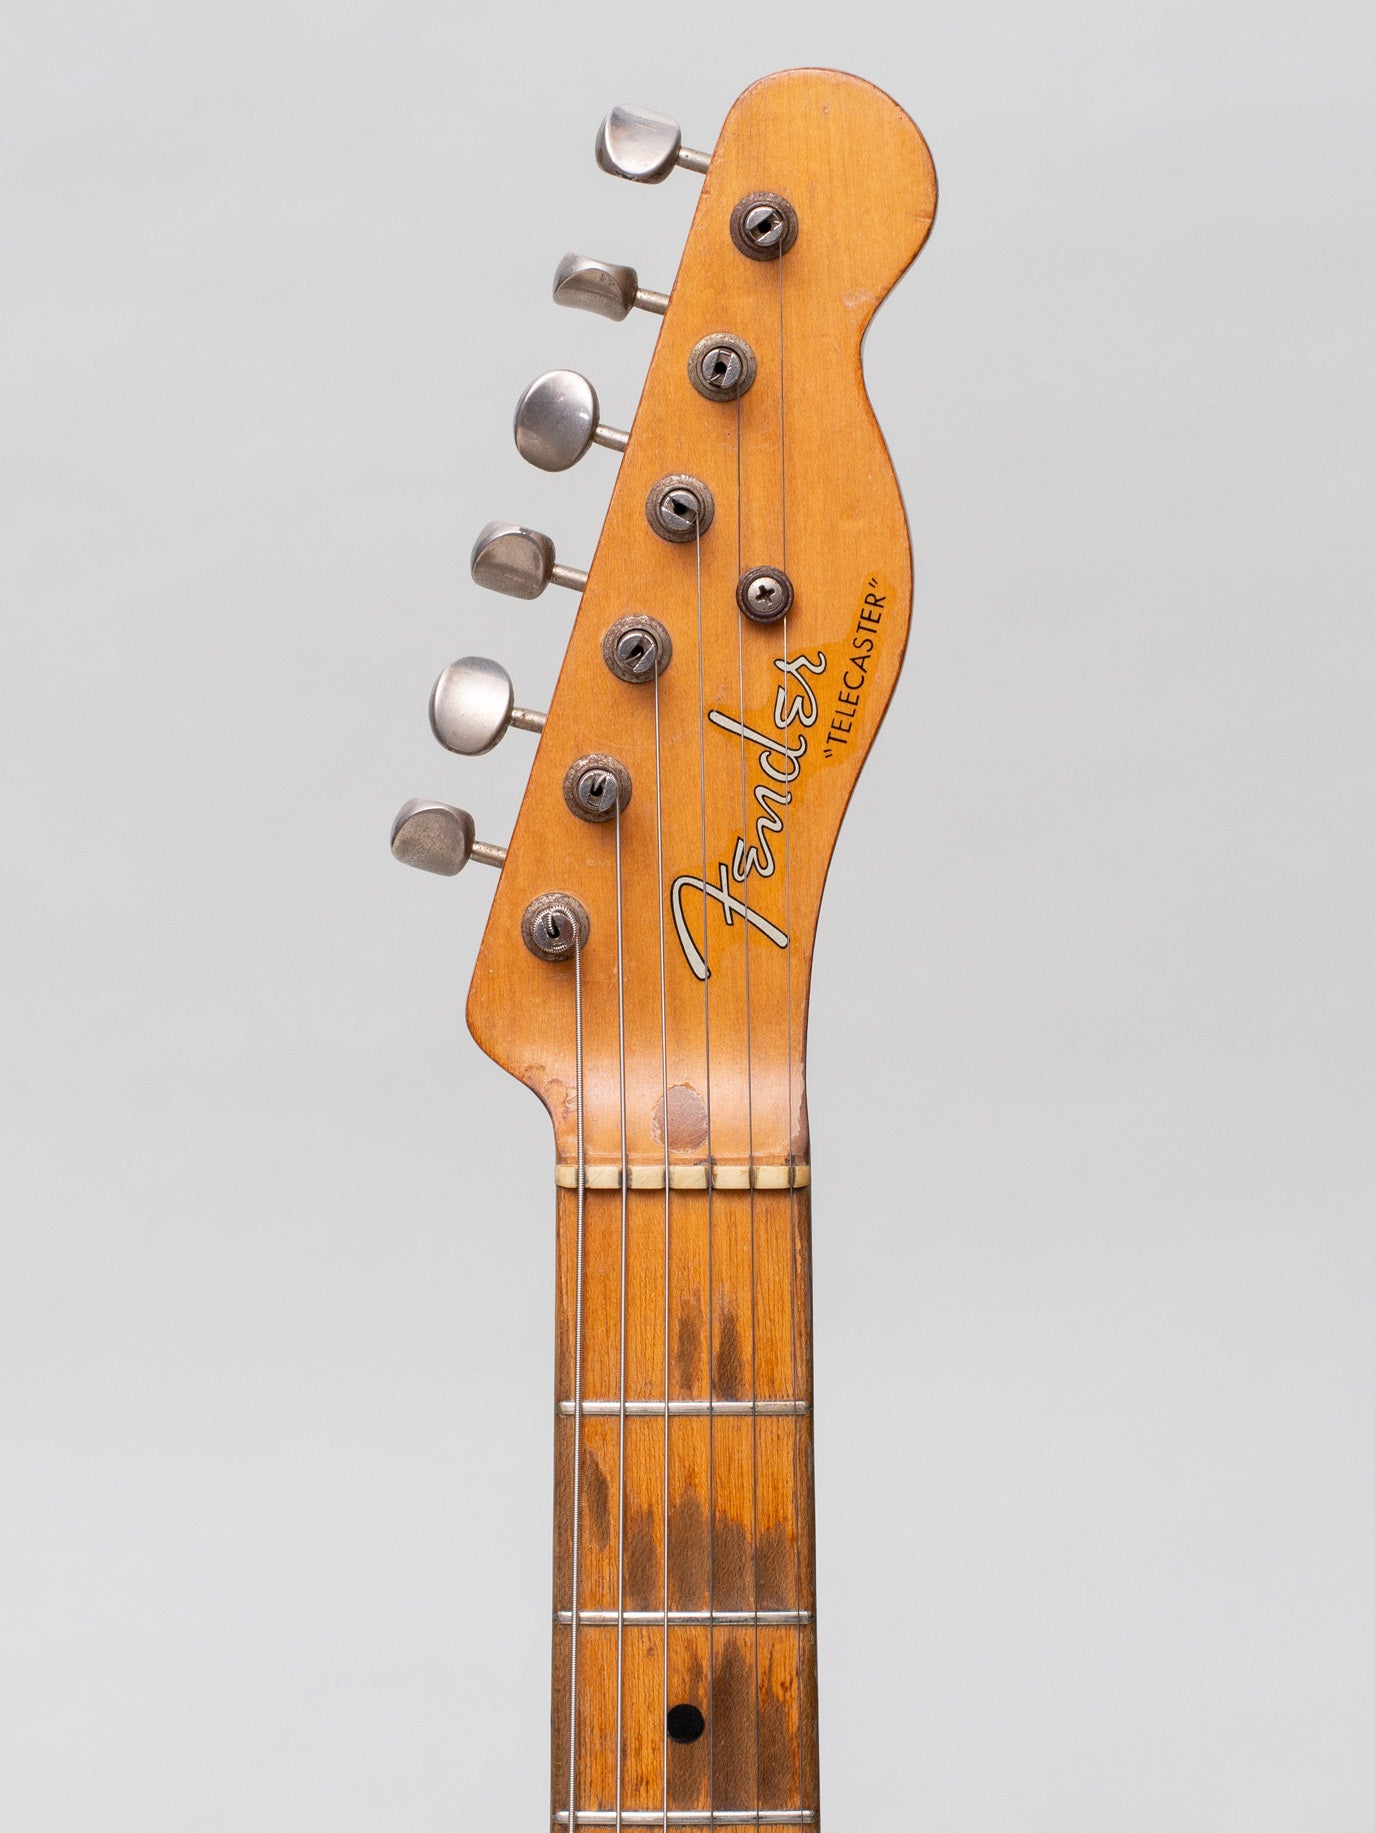 1956 Fender Telecaster